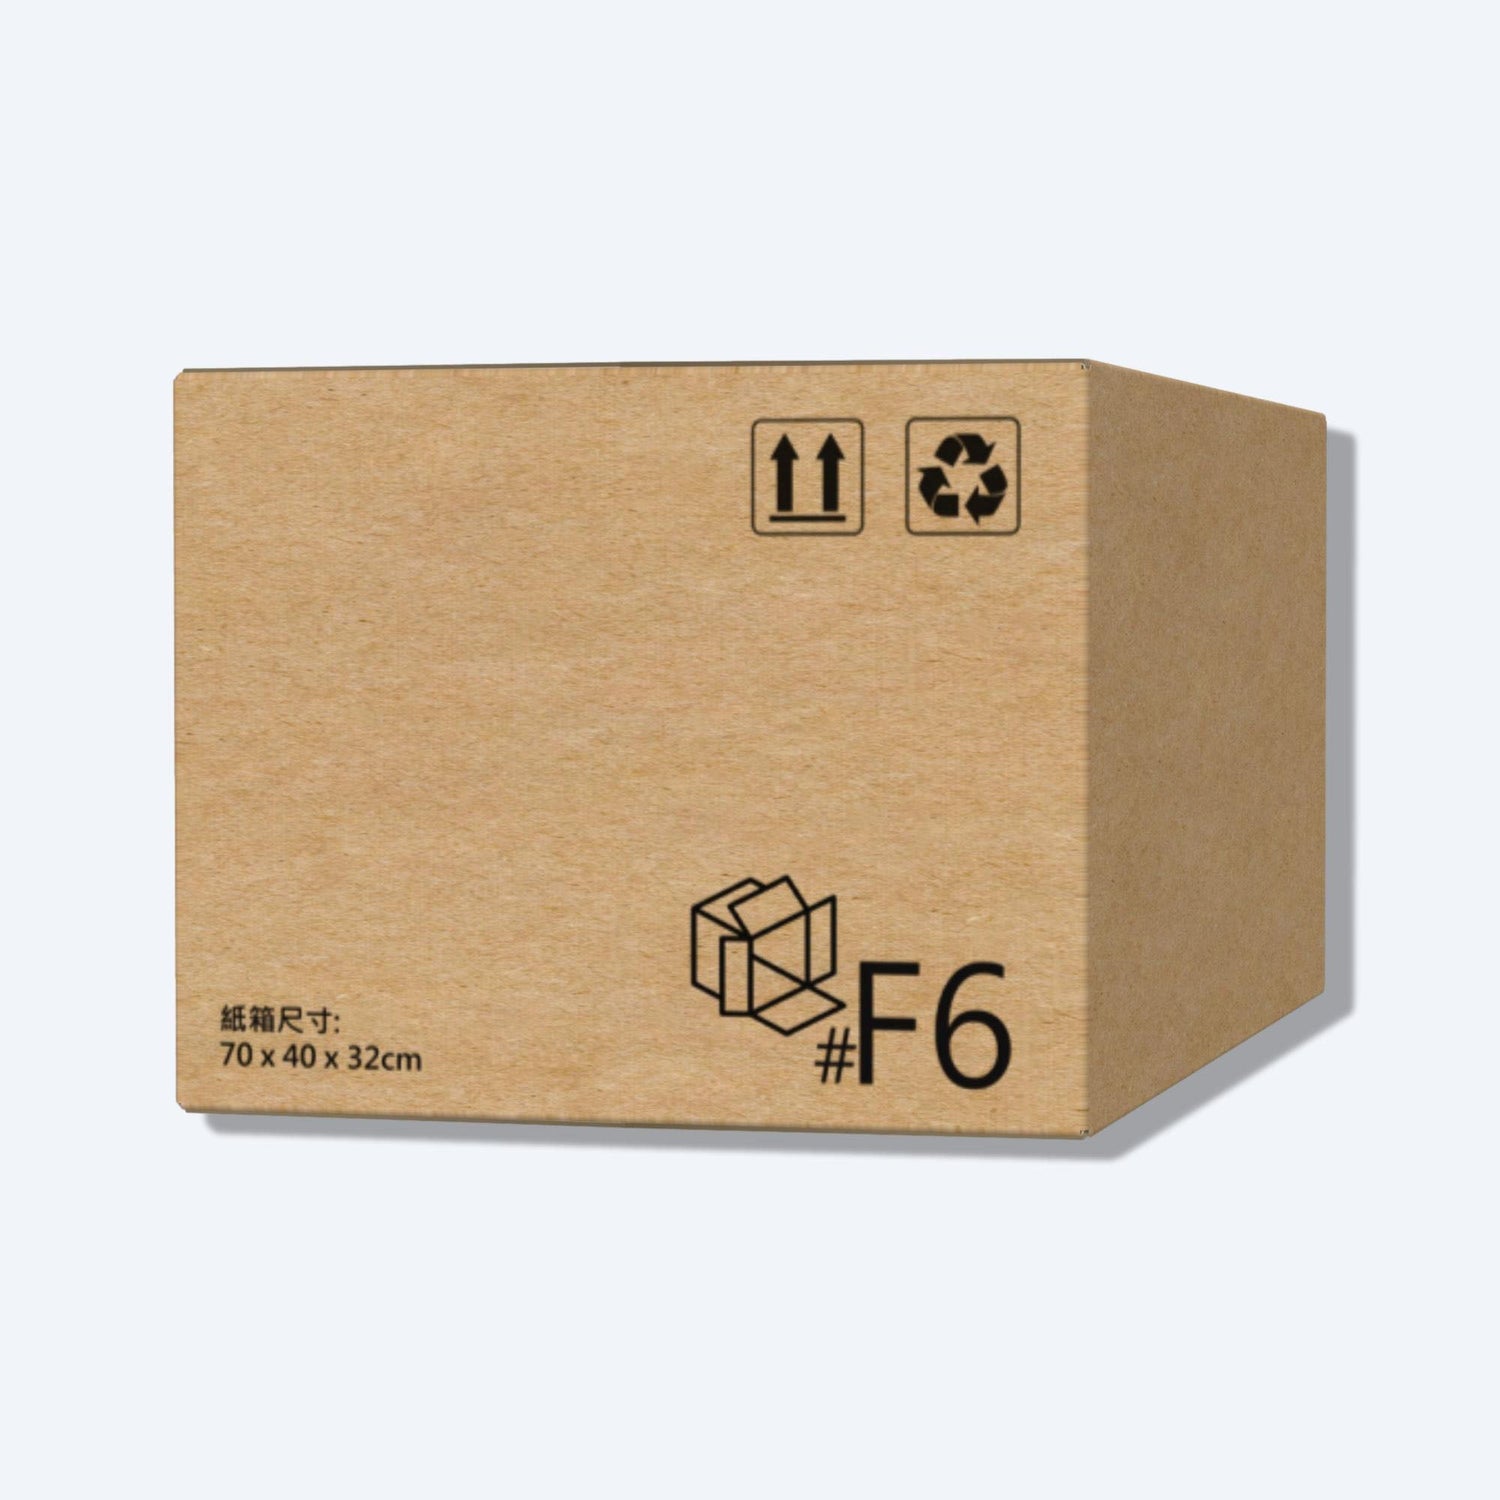 這是一個F6尺寸的順豐紙箱(包裝)，F6尺寸為70 x 40 x 32公分。箱體正面清晰印有順豐紙箱(包裝)的專屬標誌和